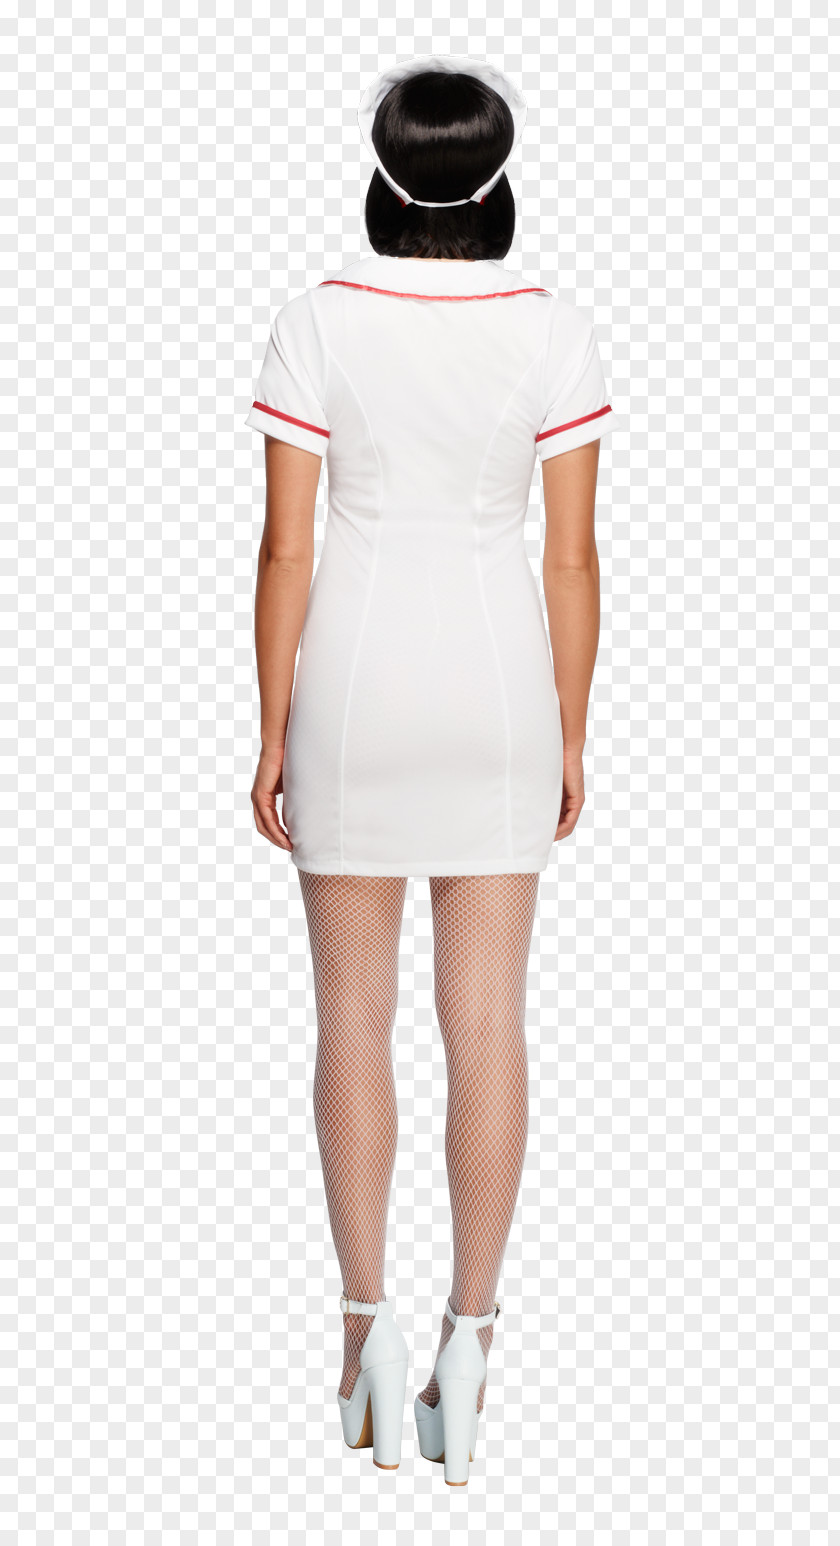 Nurse Uniform Costume Nurse's Cap Nursing Care Hospital PNG